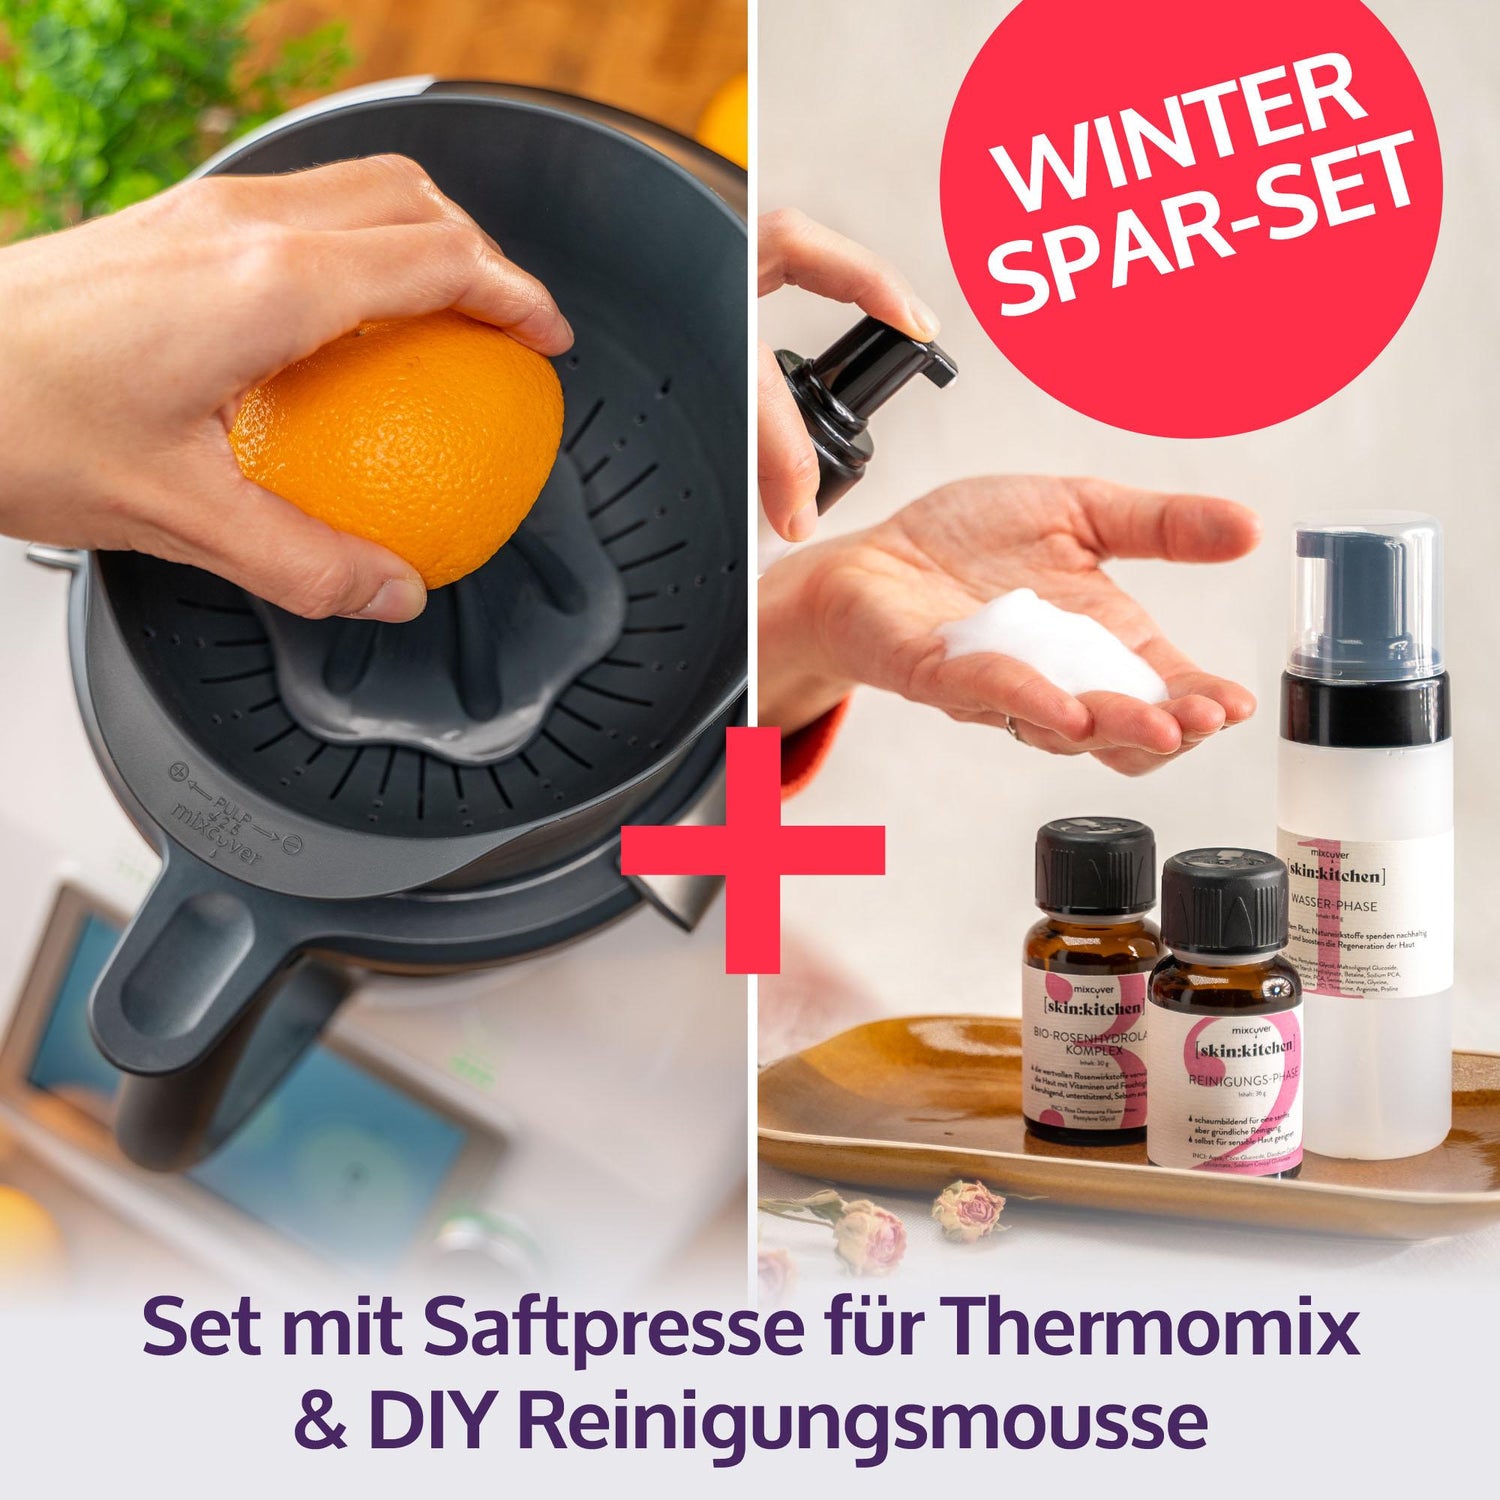 Presse-agrumes pour Thermomix TM6, TM5